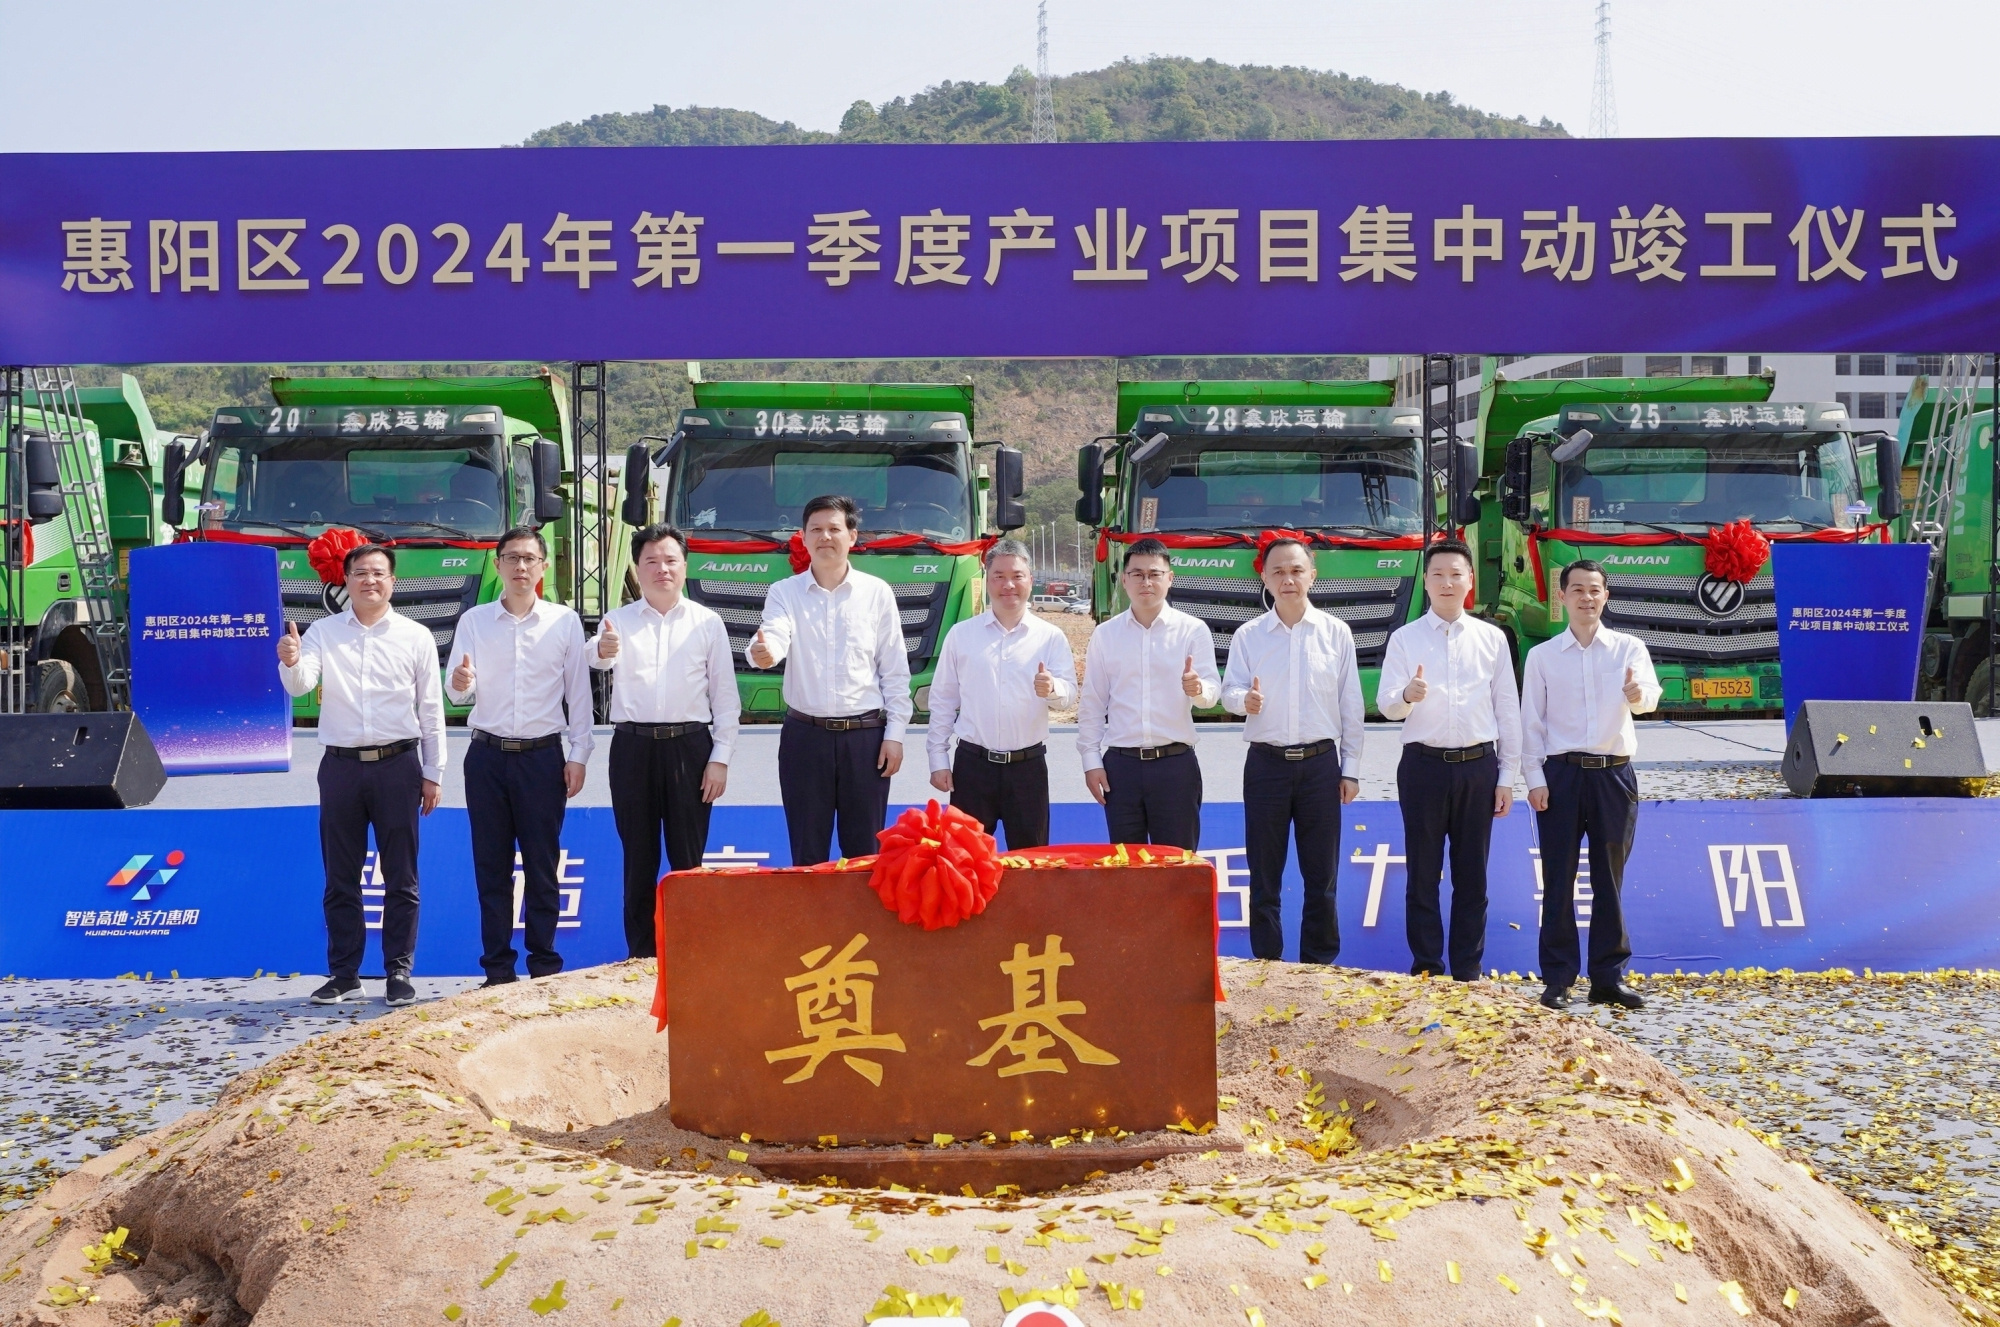 計劃總投資超130億元  惠州惠陽舉行一季度項目集中動竣工活動